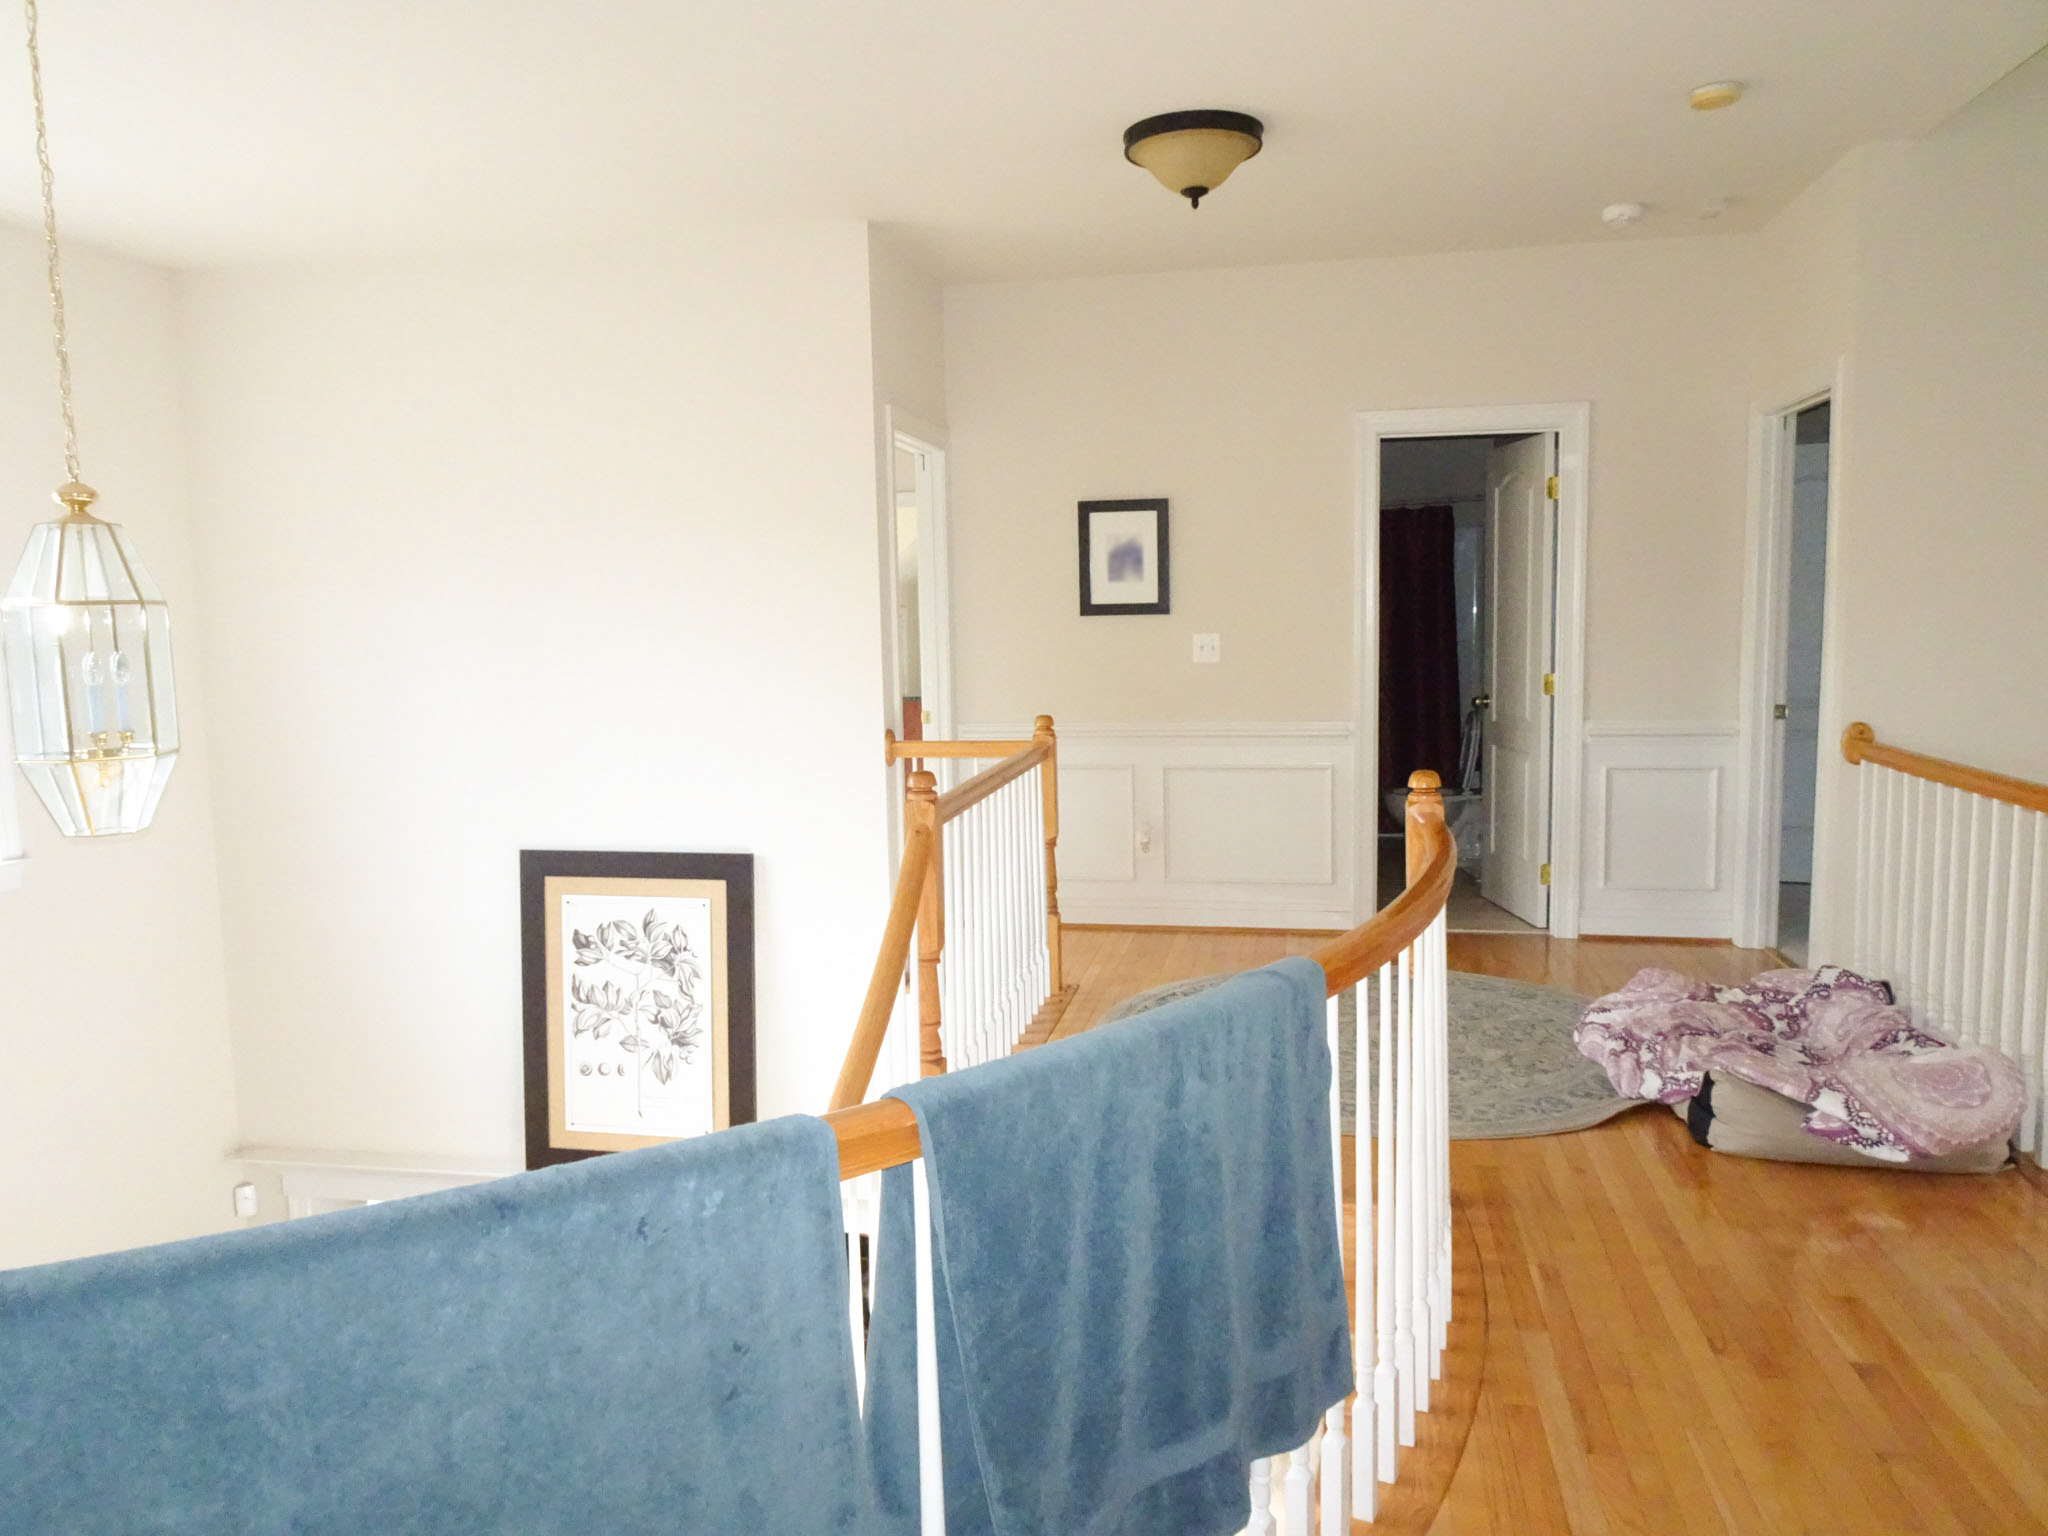 Interior Painting – Upstairs Before